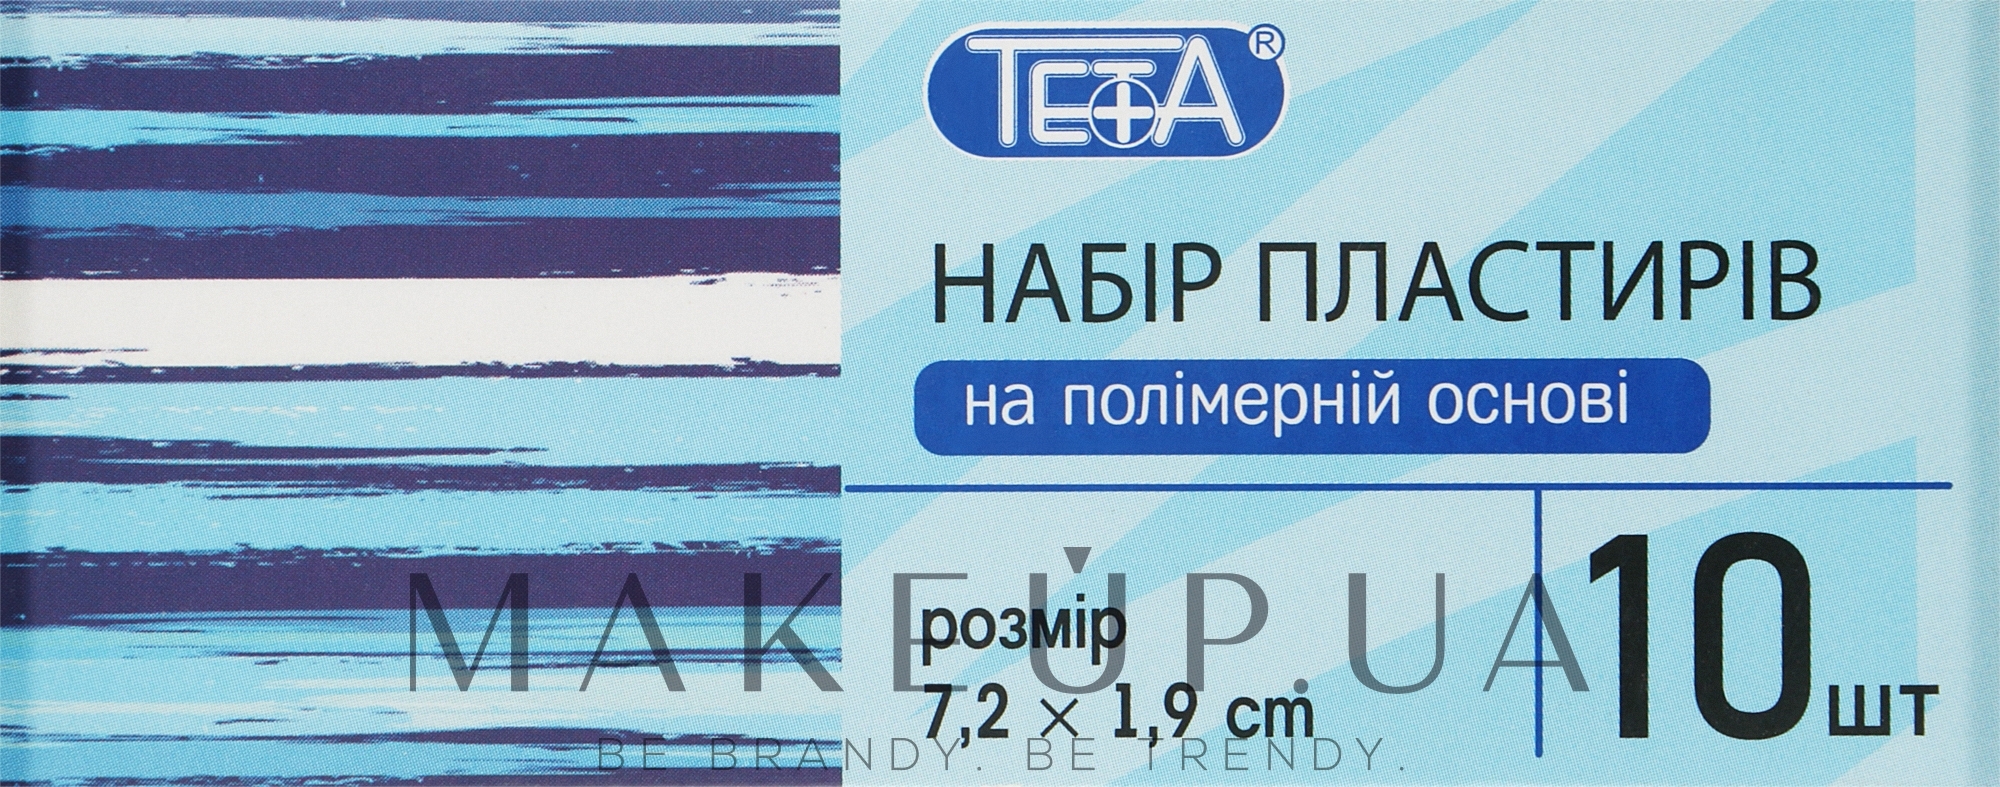 Набір пластирів першої медичної допомоги на полімерній основі 7,2х1,9 см - Teta — фото 10шт